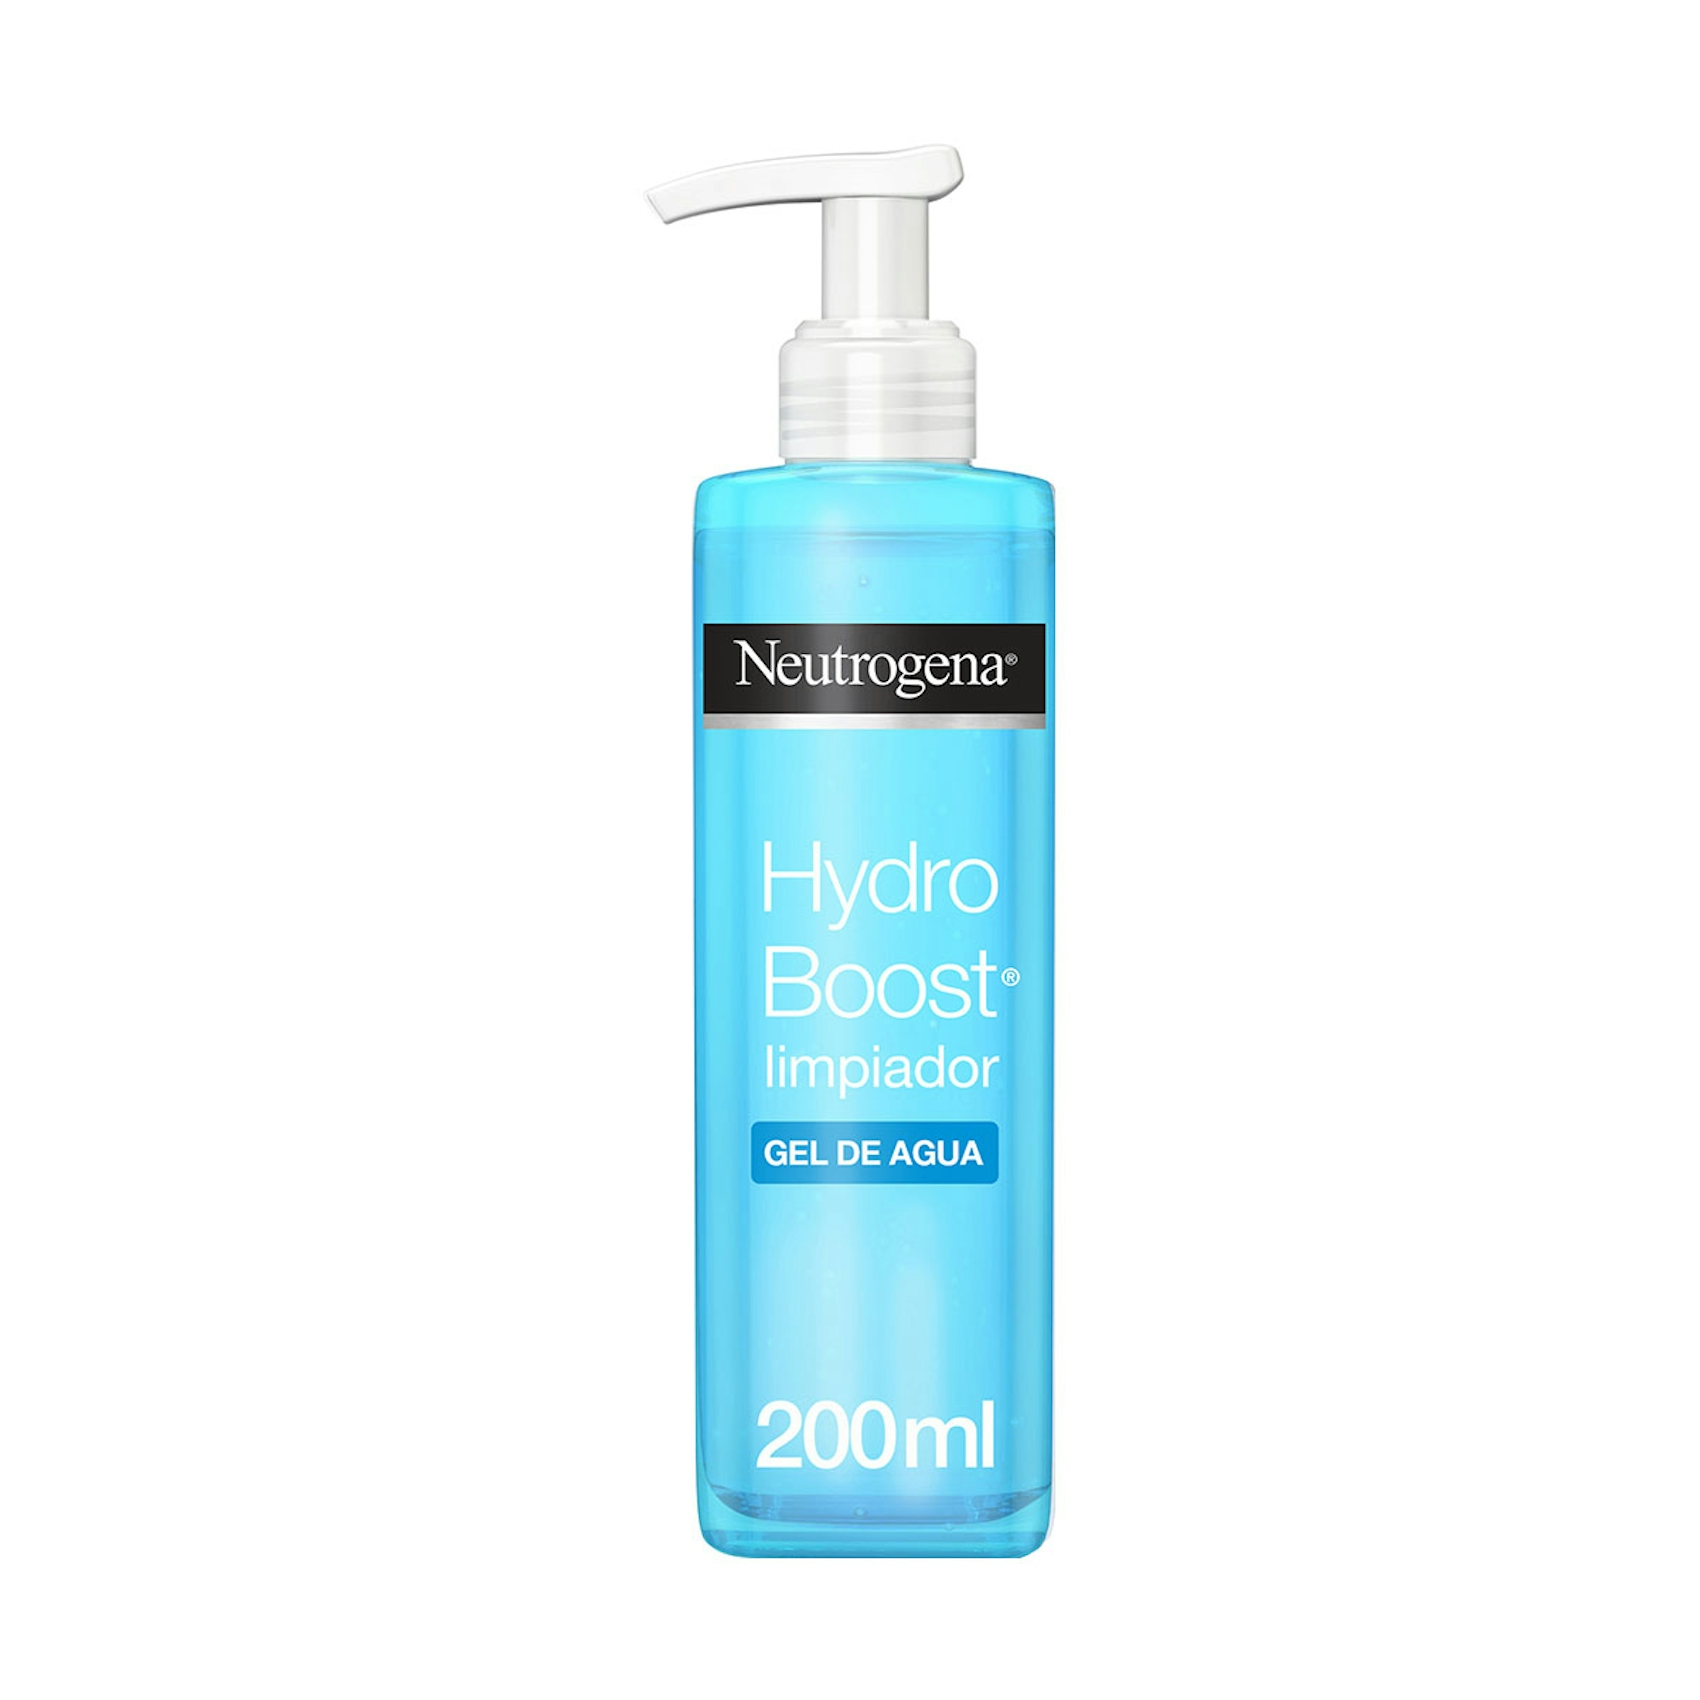 Neutrogena Hydro Boost Limpiador Gel de Agua, Elimina las Impurezas y el Maquillaje, 200ml